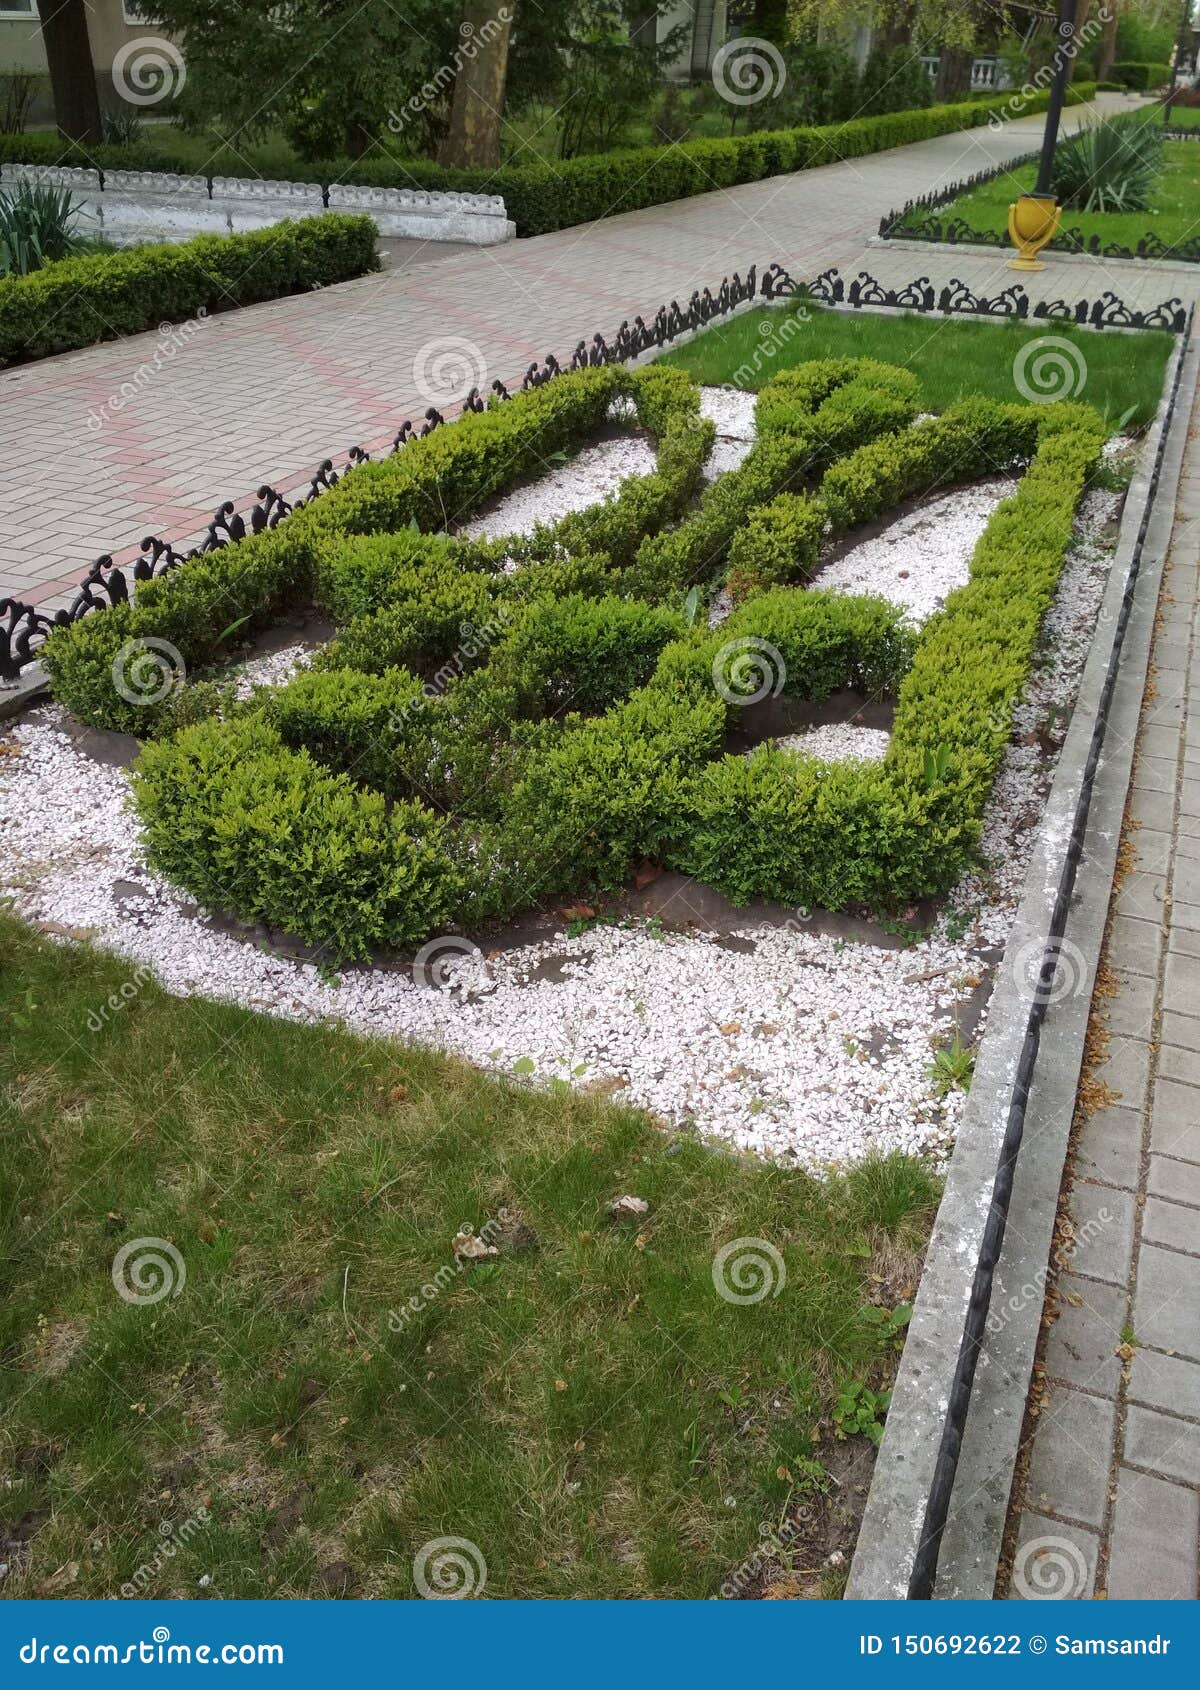 flower bed in sanatorium odesa in odessa, ukraine